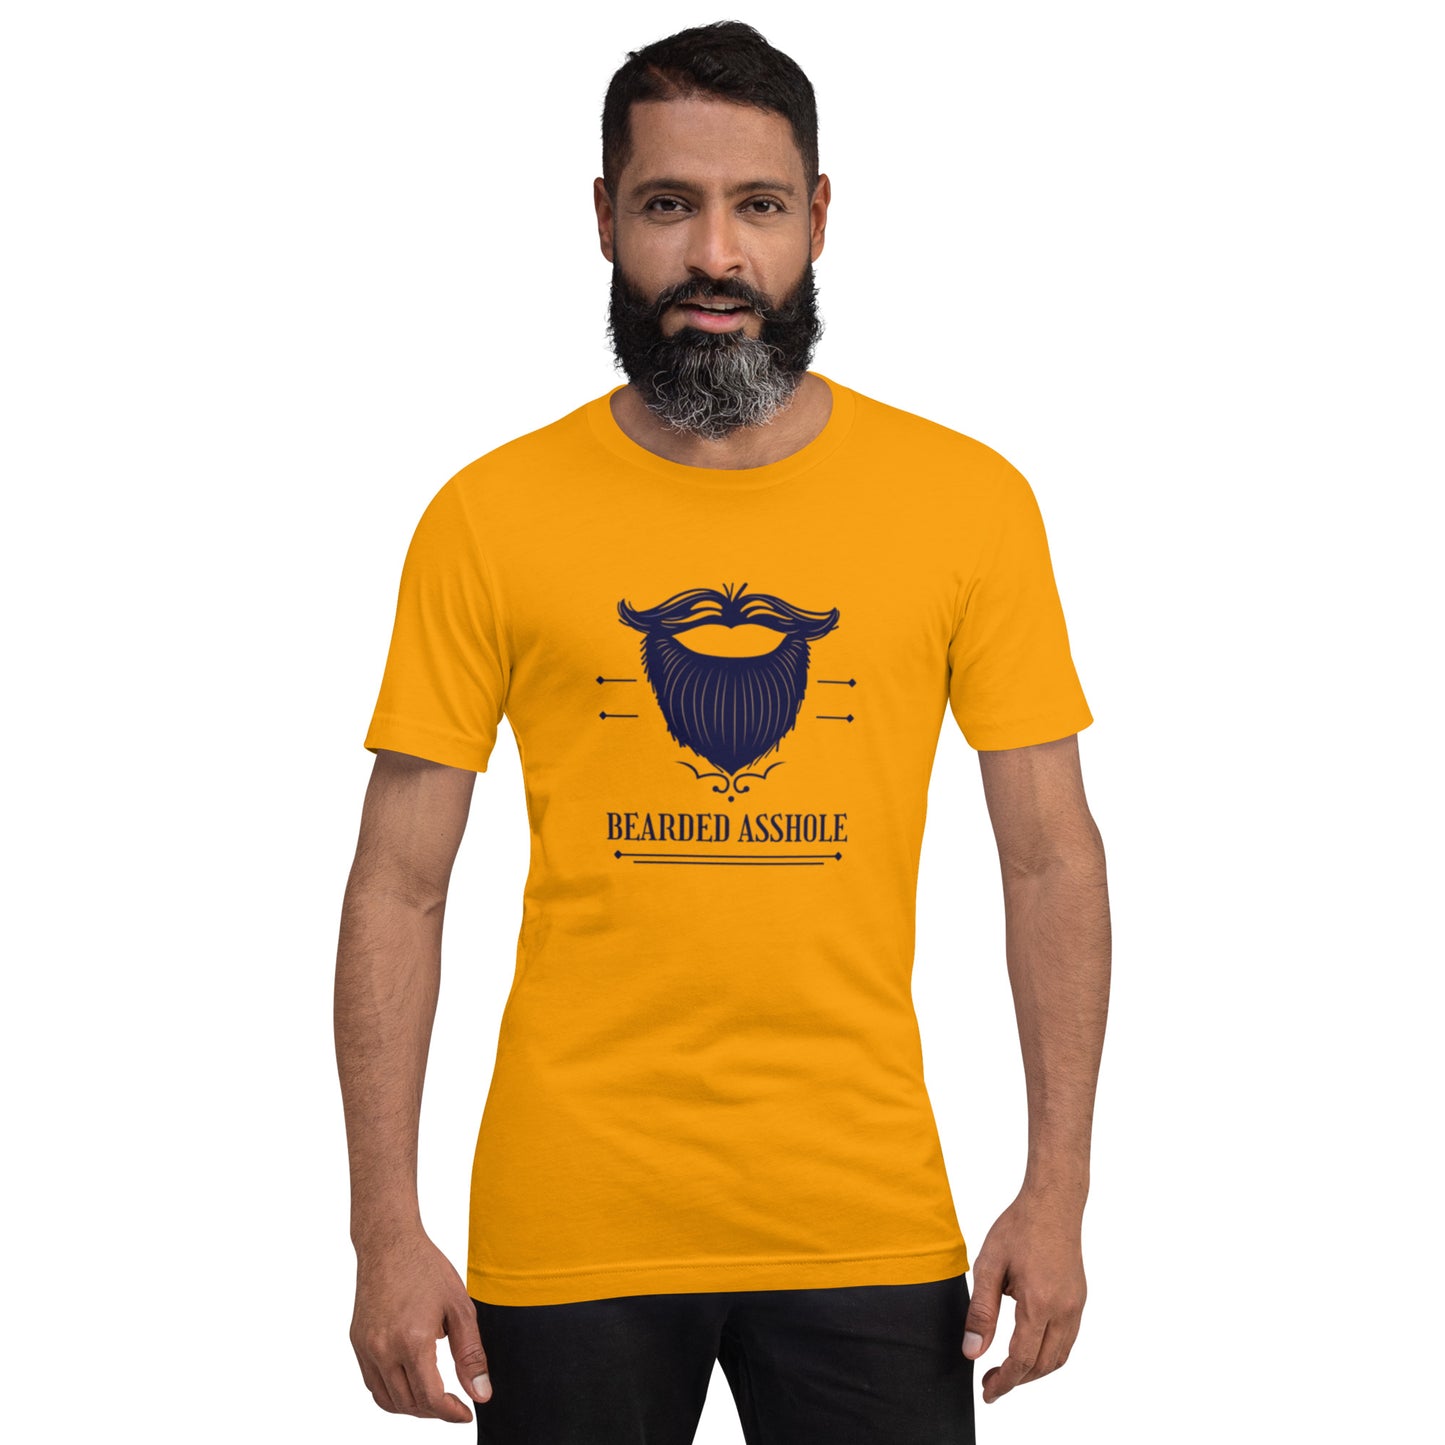 Bearded *sshole Unisex t-shirt